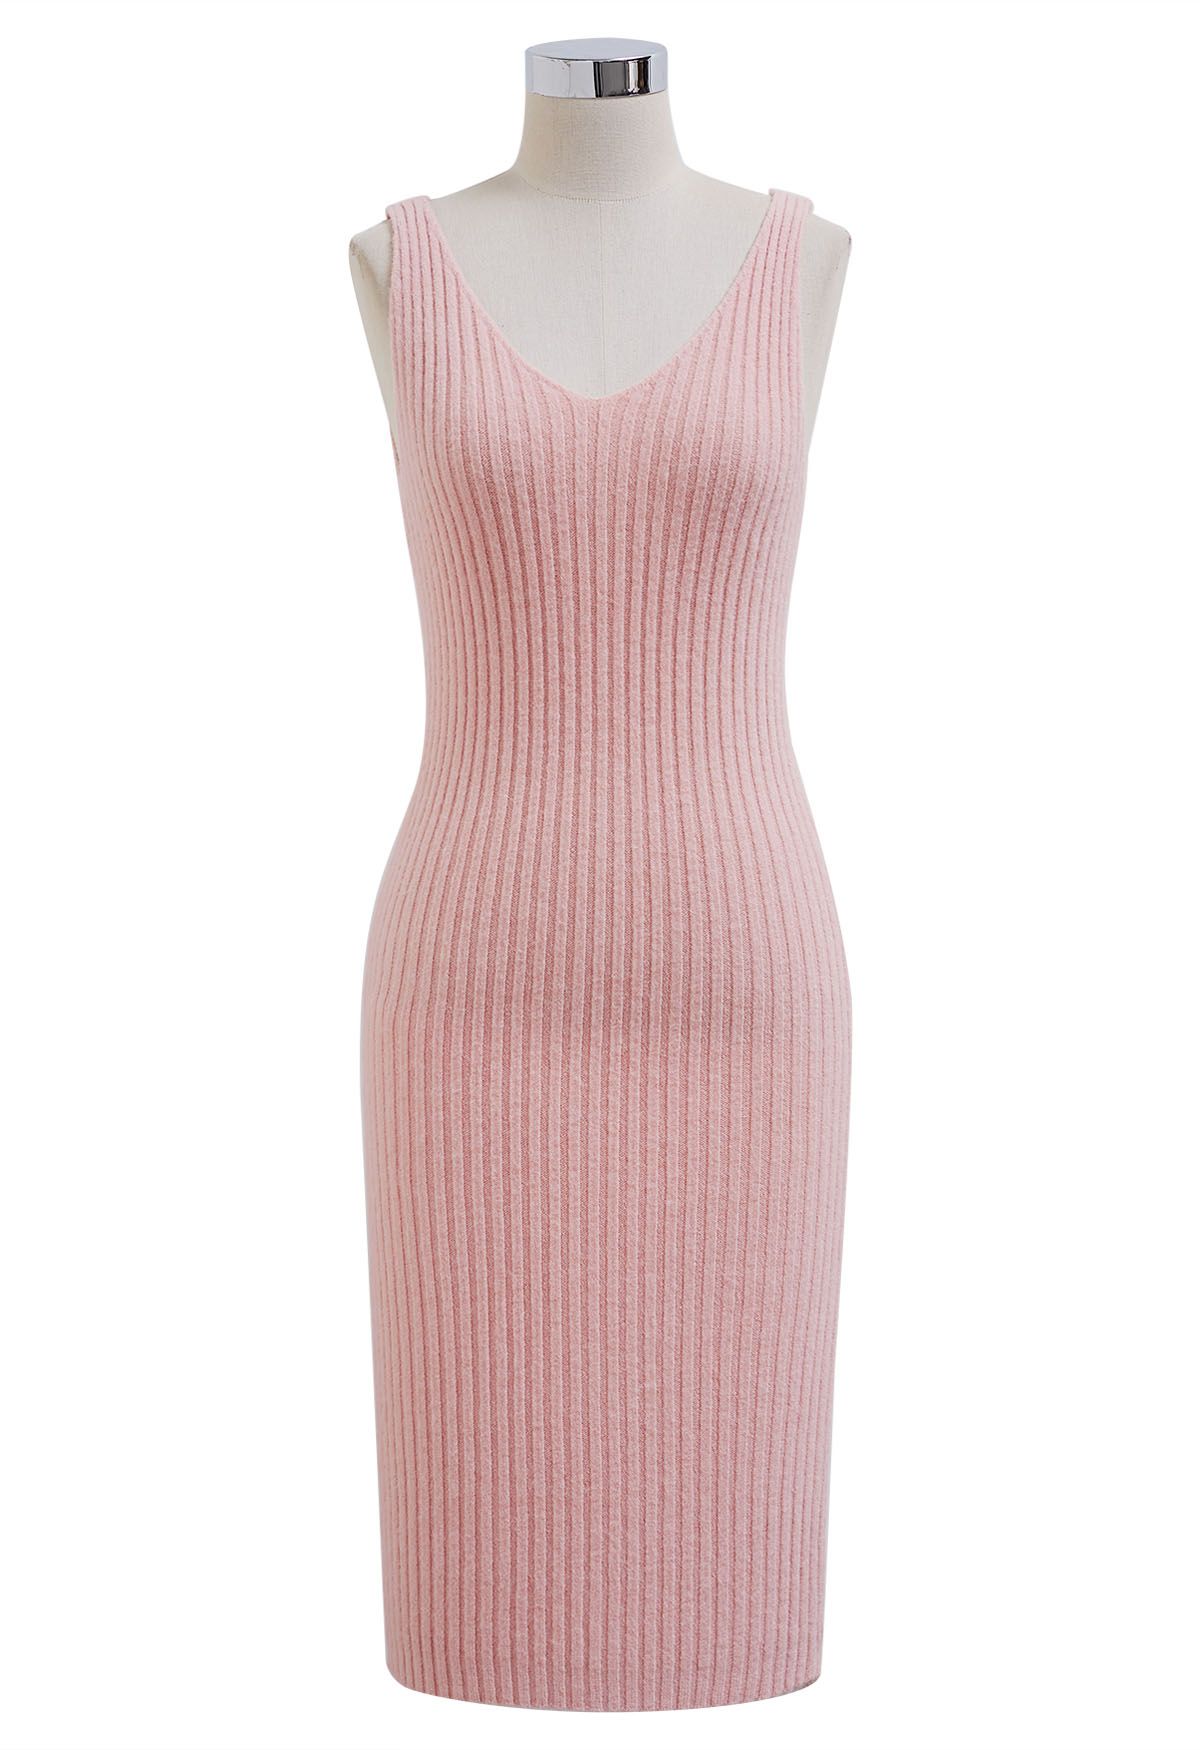 Geripptes Twinset-Kleid mit Perlenausschnitt in Rosa